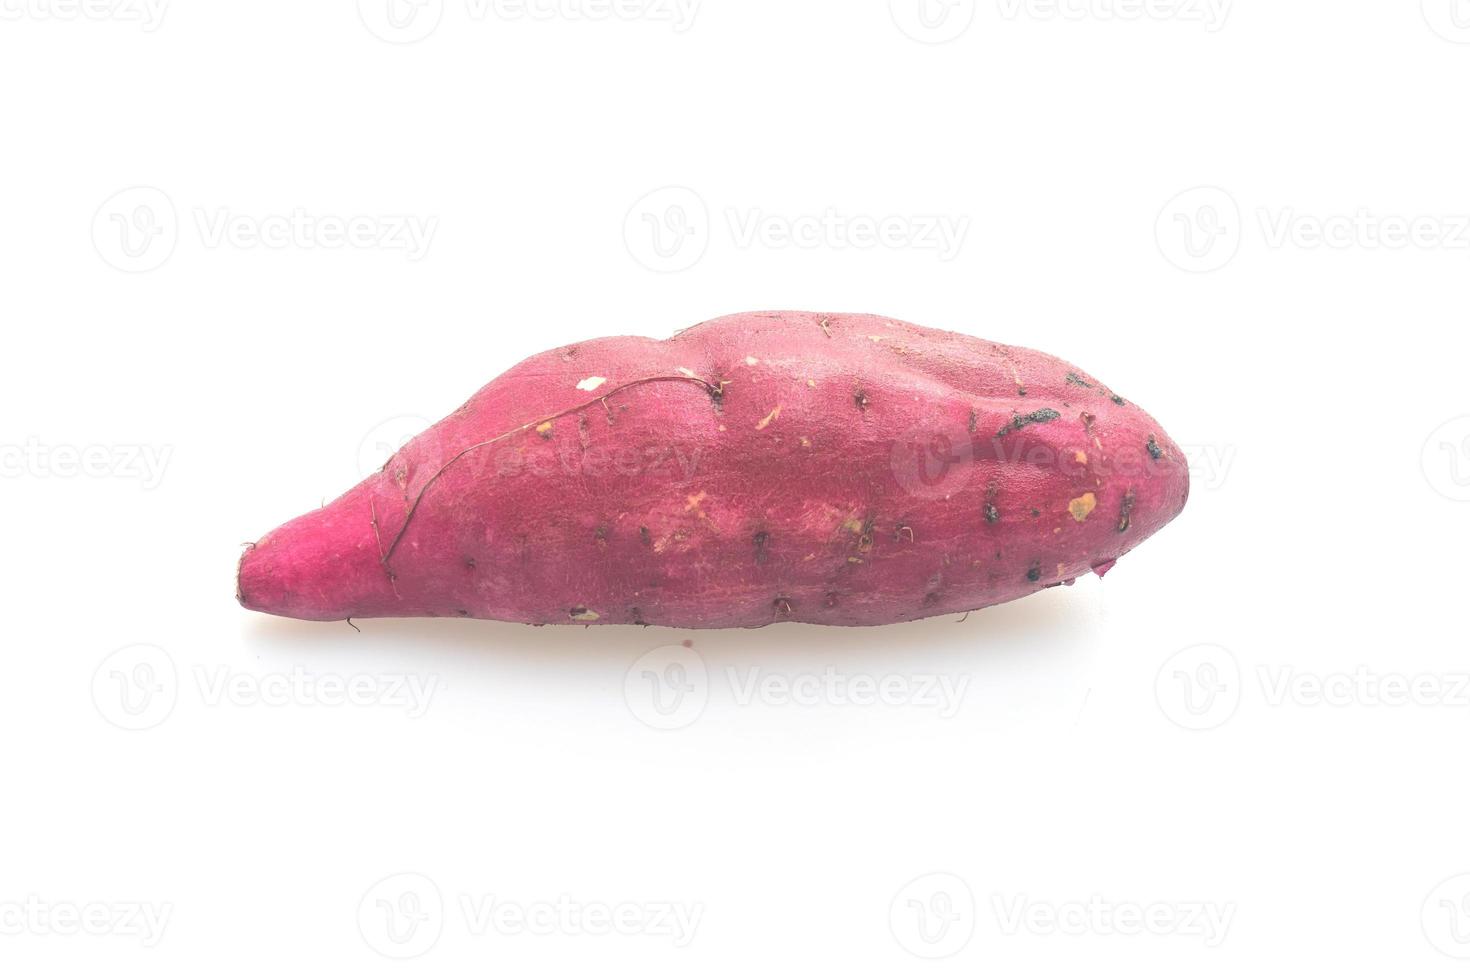 fresh Japanese sweet potatoes on white background photo